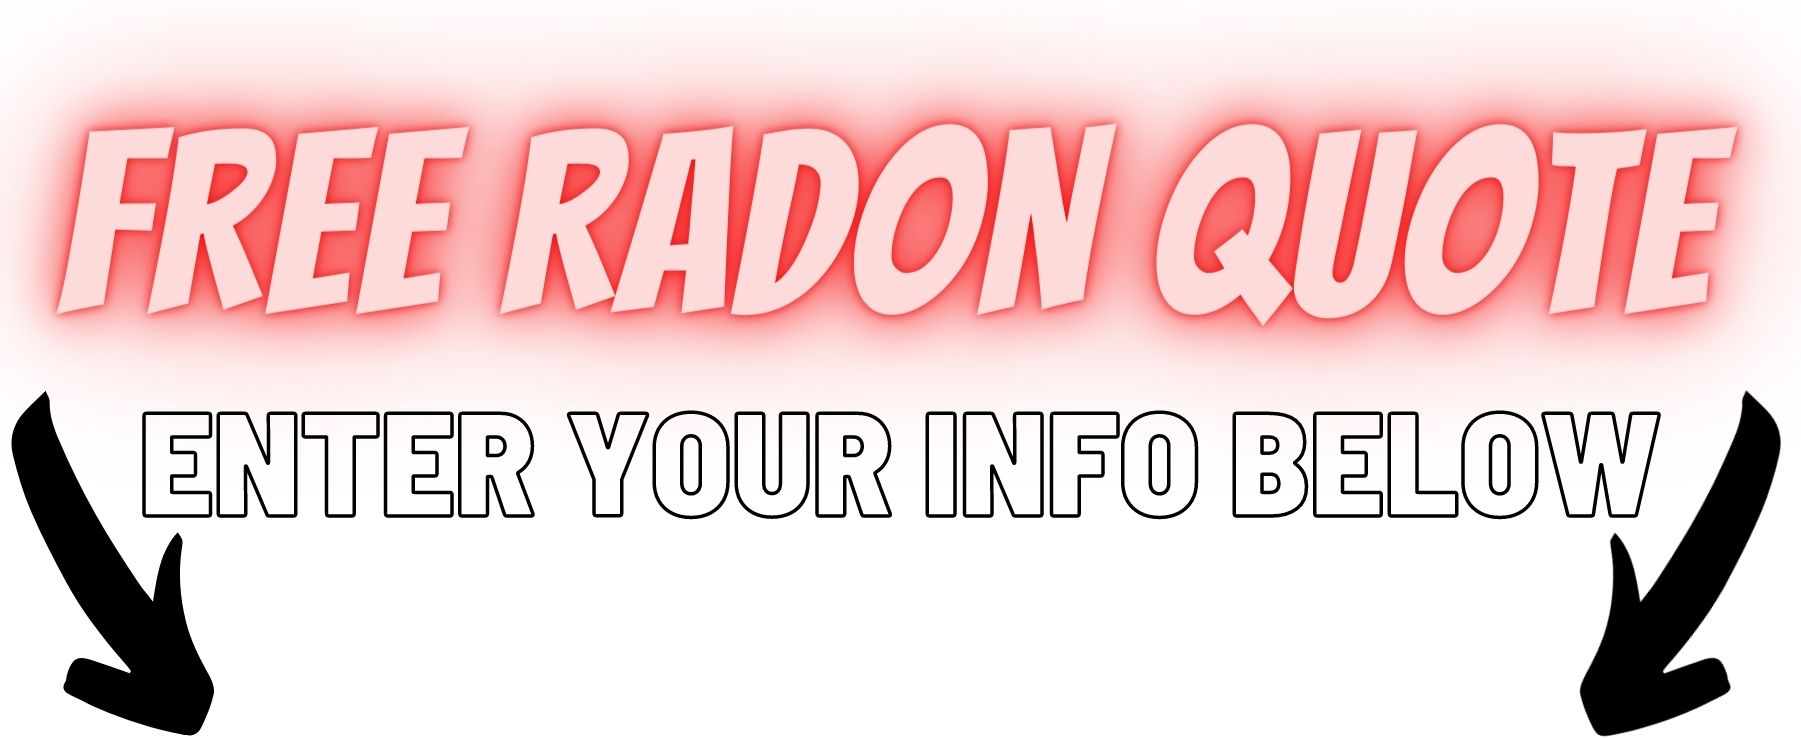 Radon mitigation estimate